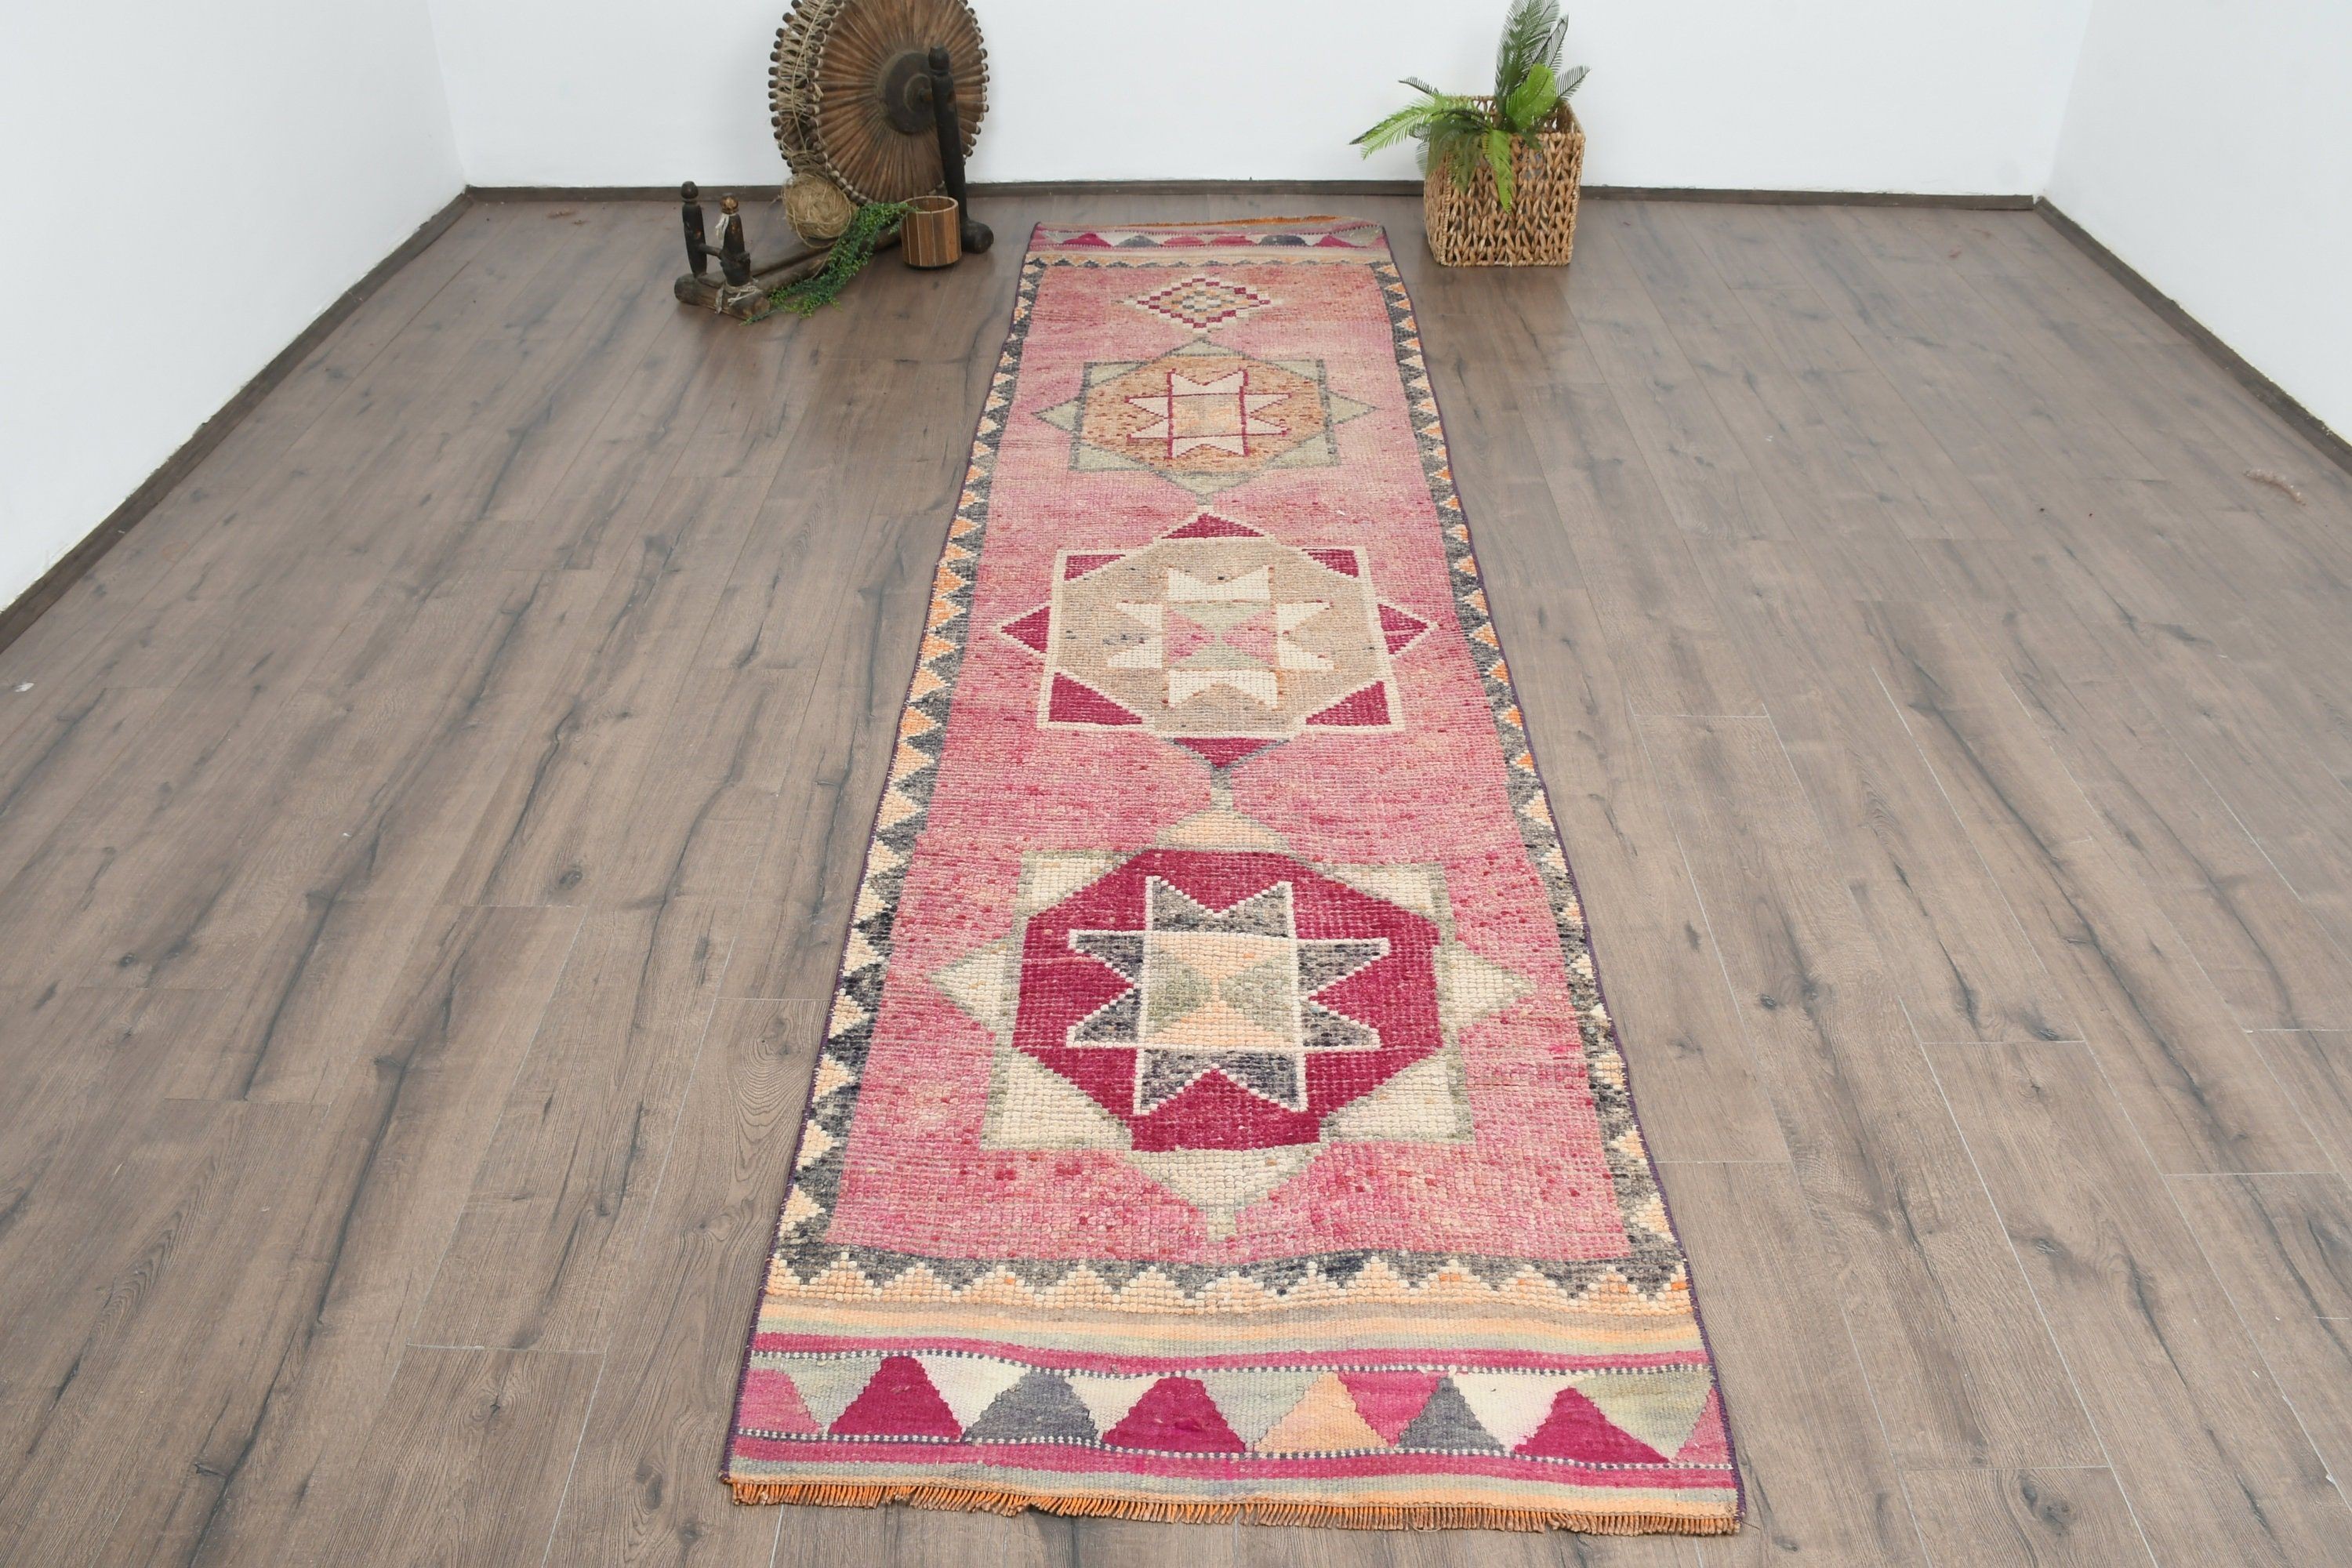 Vintage Rug, Turkish Rug, Home Decor Rug, Corridor Rug, 2.9x11 ft Runner Rug, Bright Rug, Pink Floor Rug, Antique Rug, Rugs for Kitchen